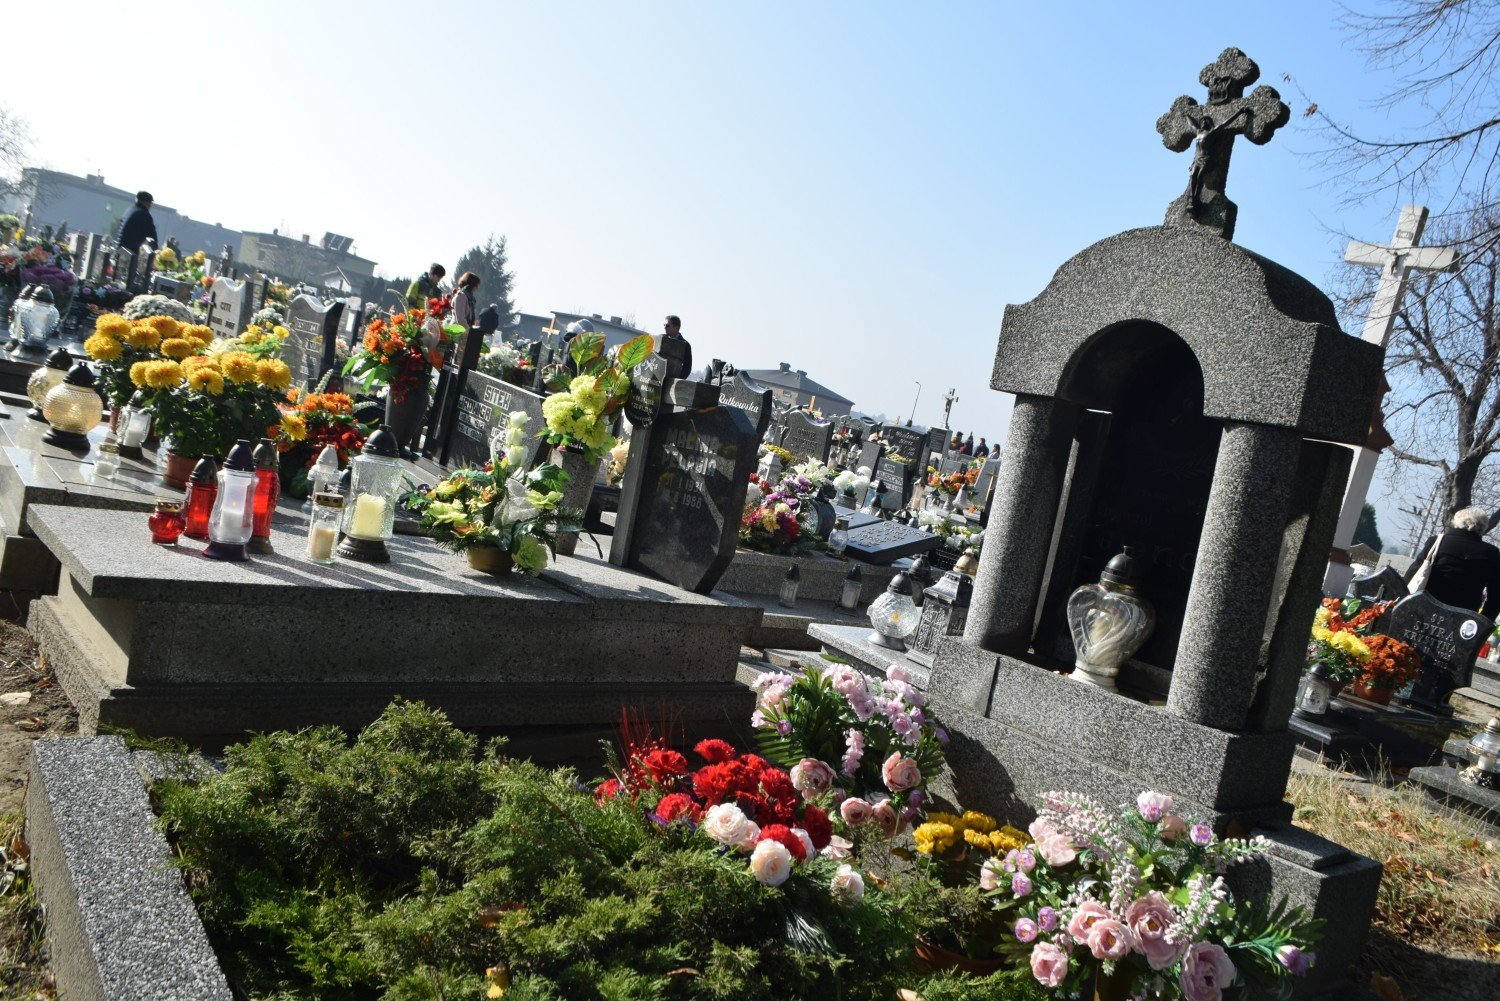 Cmentarz W Pszowie Zamkniety W Wodzislawiu Sl Znaczne Ograniczenia Wodzislaw Slaski Nasze Miasto